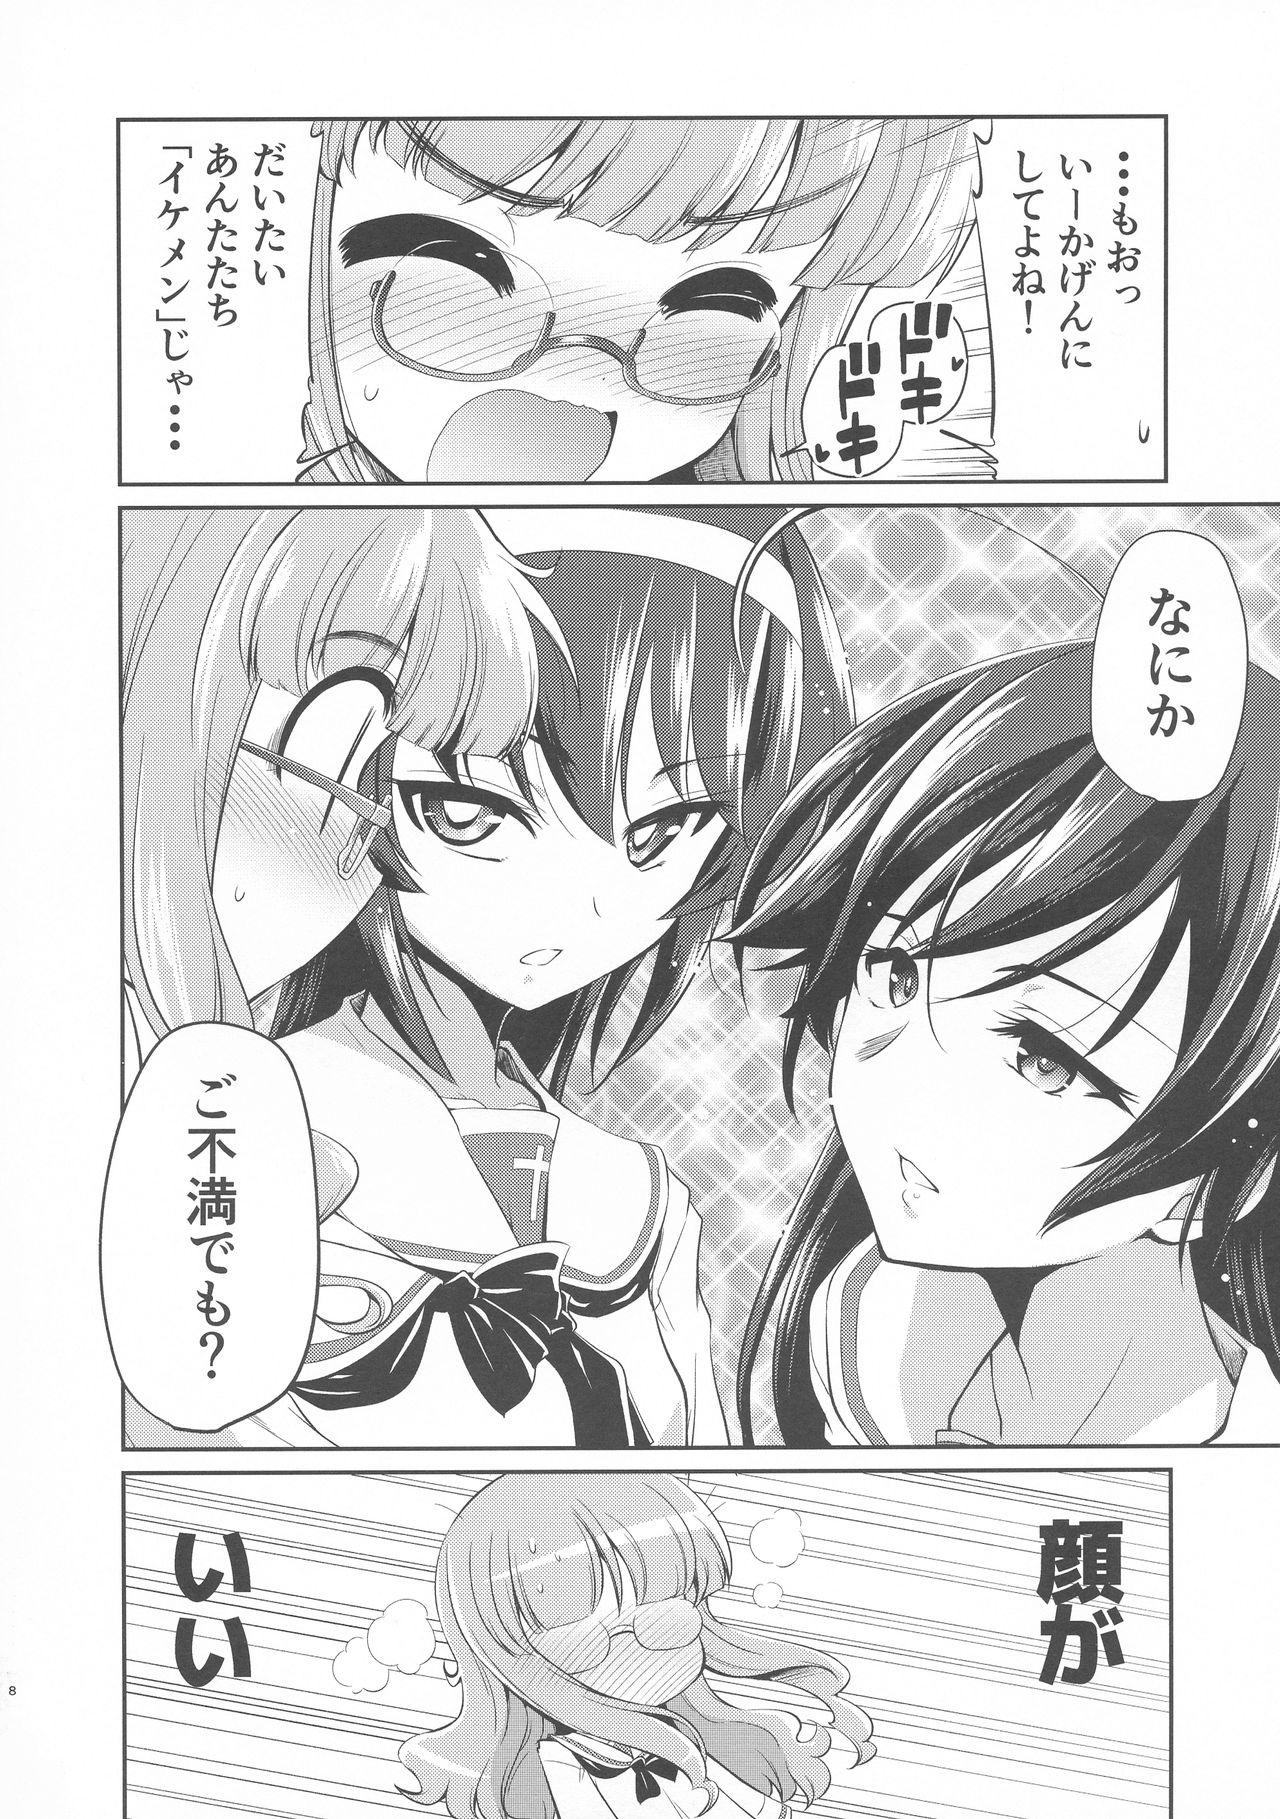 Ball Sucking Saori! Zexy Nanka Sutete Watashi-tachi no Yome ni Koi!! - Girls und panzer Reversecowgirl - Page 7